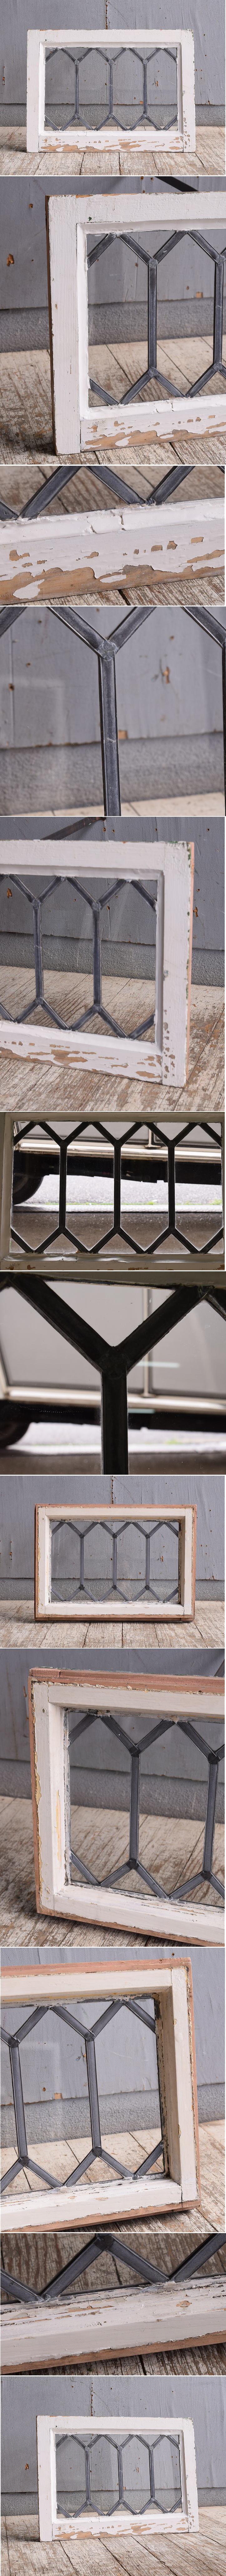 イギリス アンティーク 窓 無色透明 10880